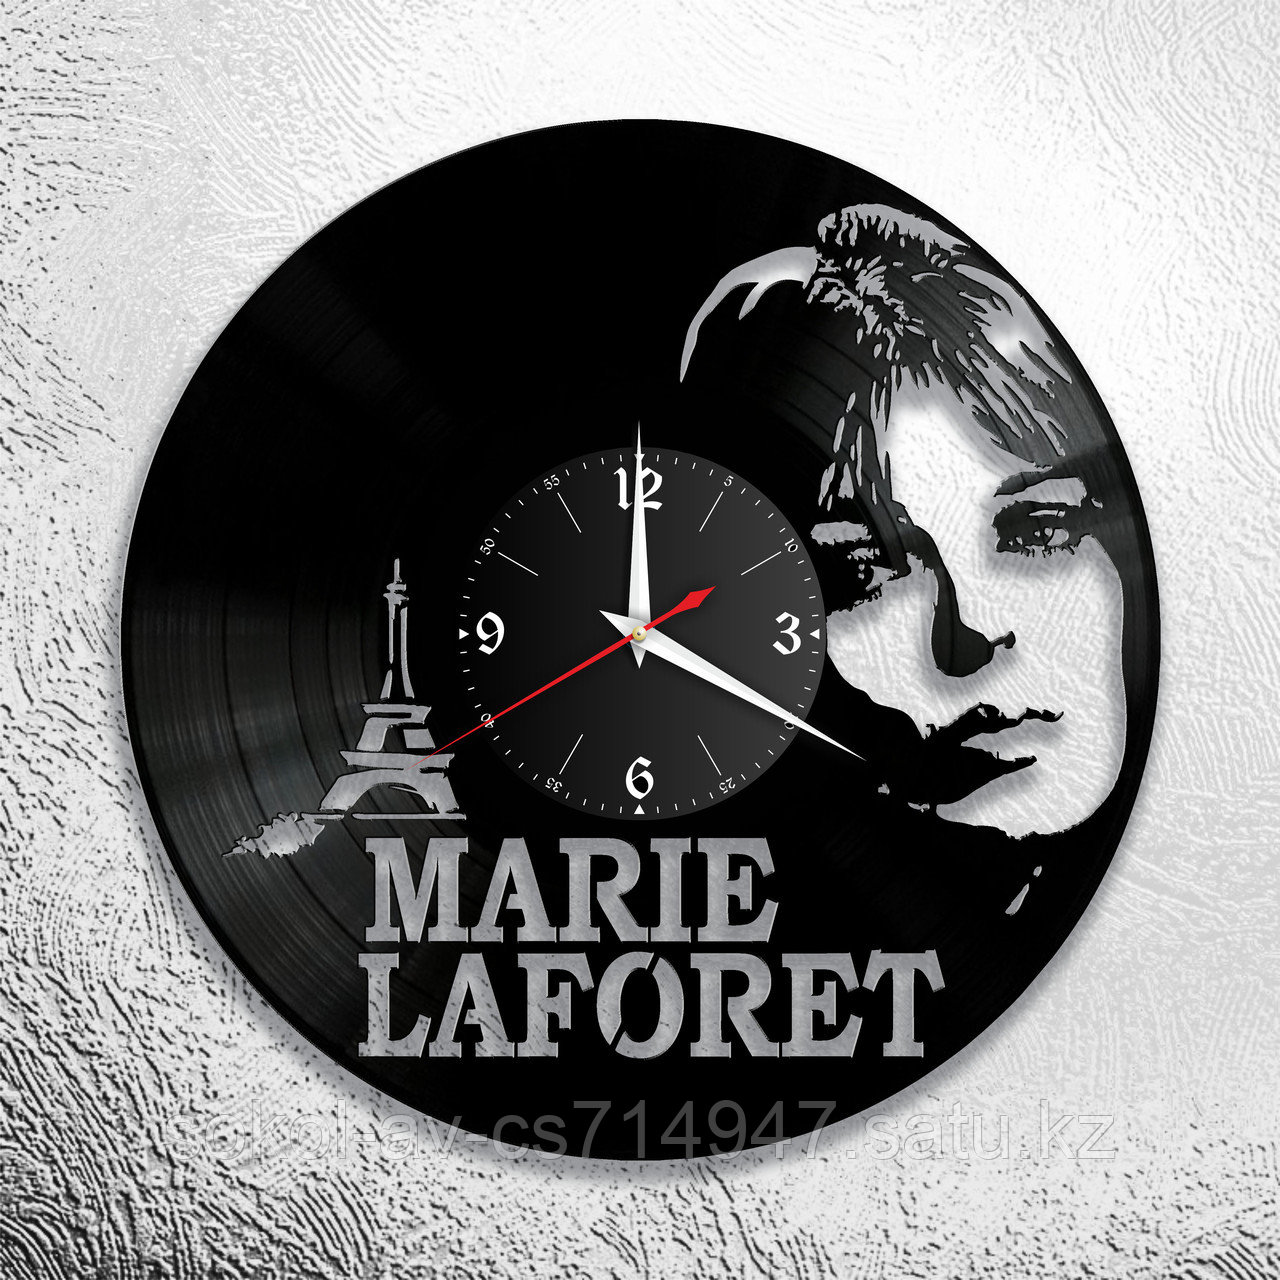 Настенные часы из пластинки, Мари Лафоре Marie Laforet, подарок фанатам, любителям, 0784